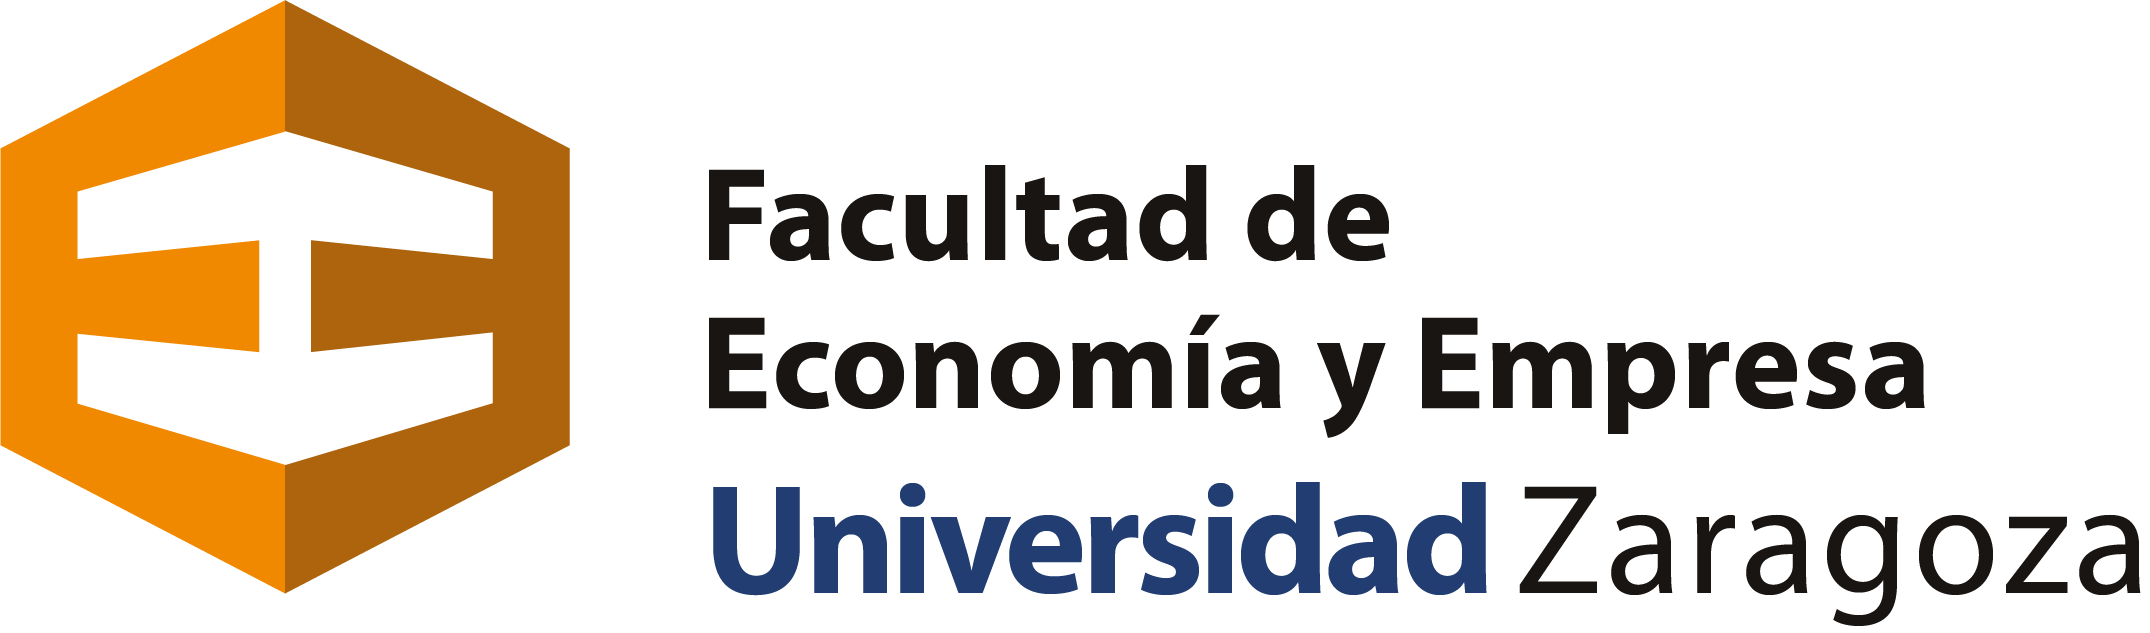 Logo Facultad de Ciencias Económicas y Empresariales